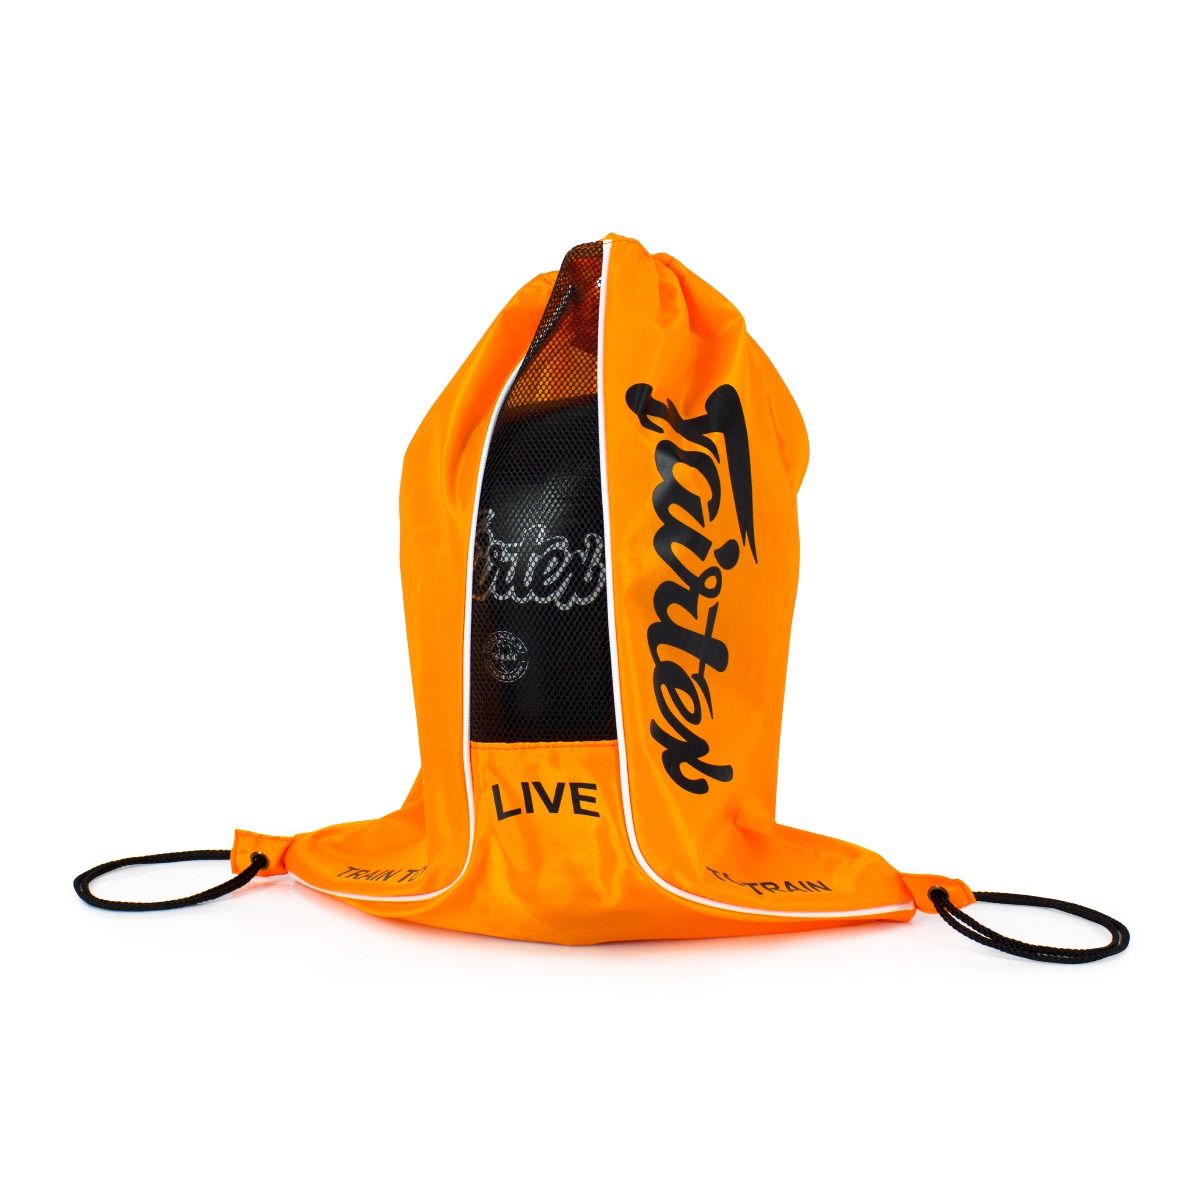 Fairtex Bag 6 Sash Bag Orange